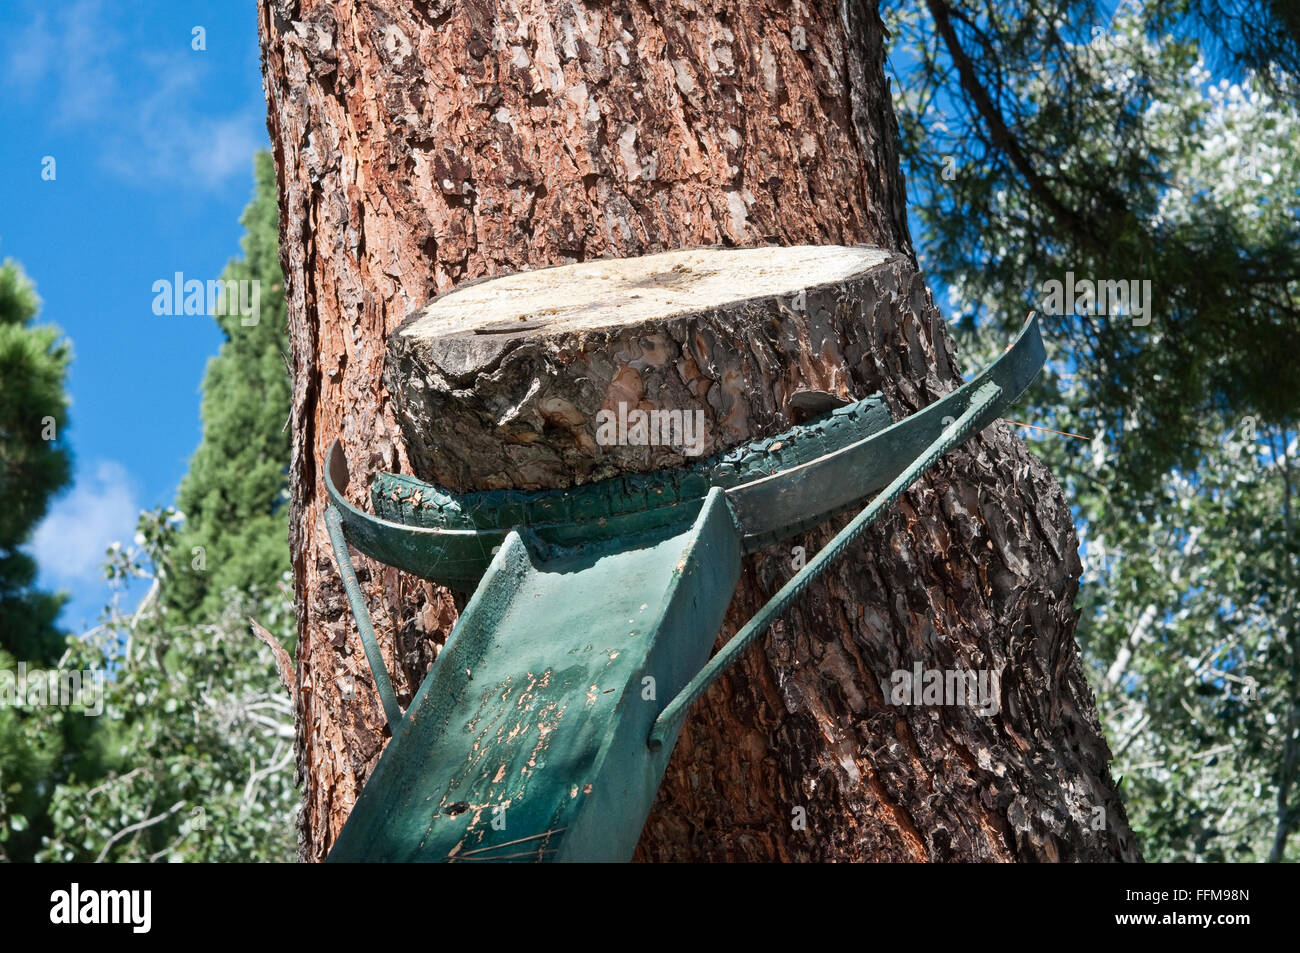 Metallischen Strahl zu stützen, einen Baum in einem öffentlichen Garten Stockfoto